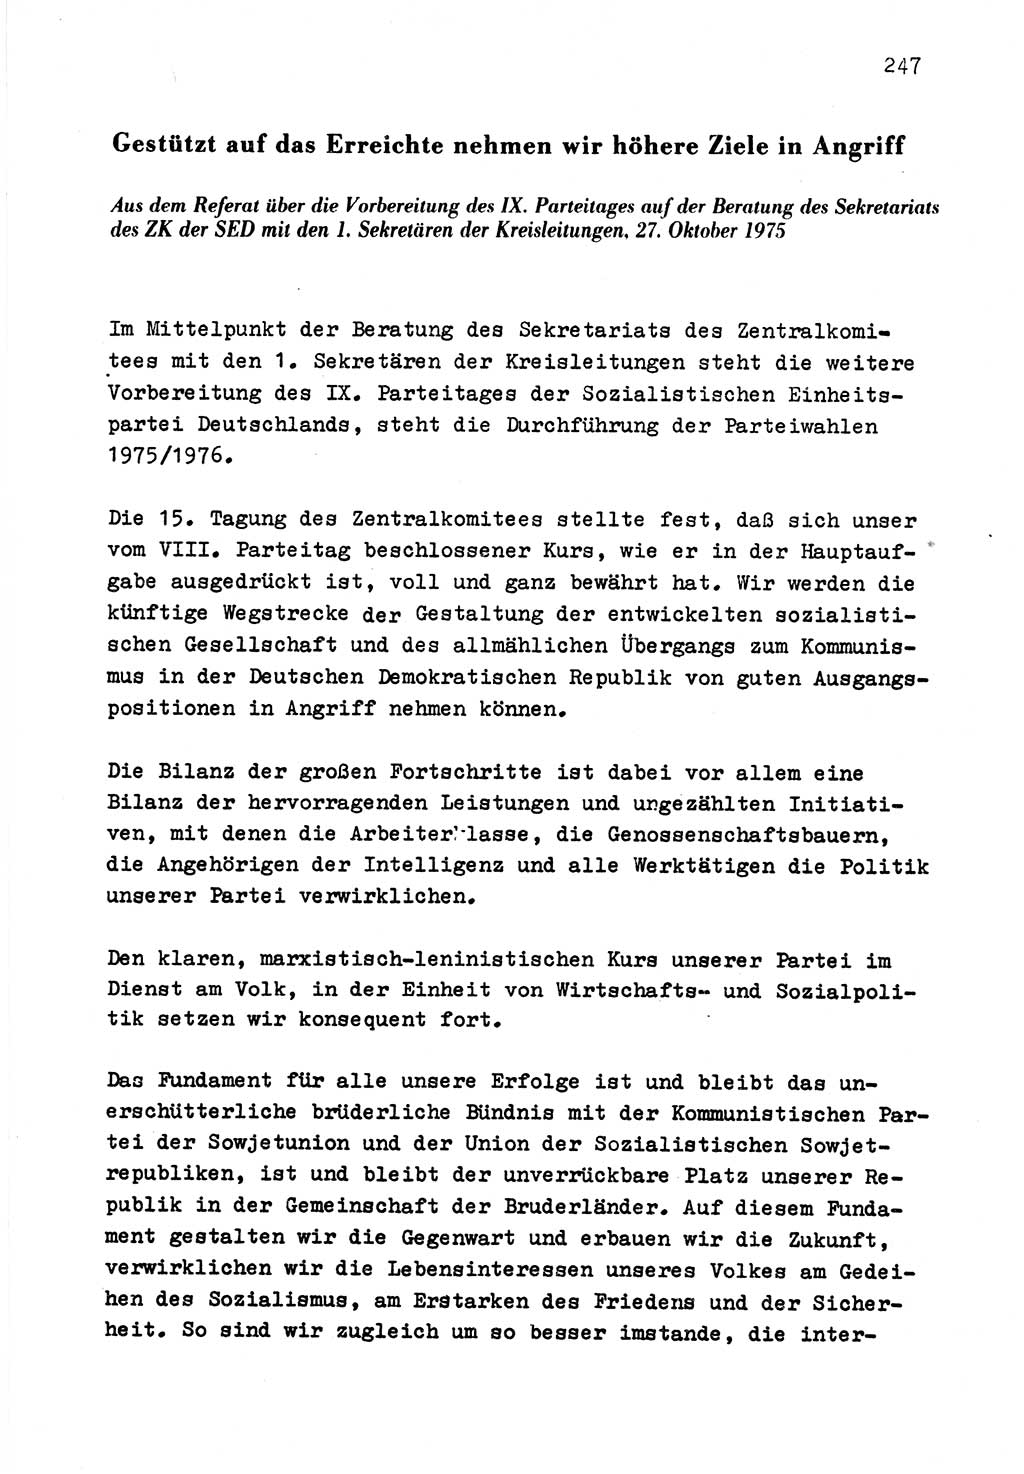 Zu Fragen der Parteiarbeit [Sozialistische Einheitspartei Deutschlands (SED) Deutsche Demokratische Republik (DDR)] 1979, Seite 247 (Fr. PA SED DDR 1979, S. 247)